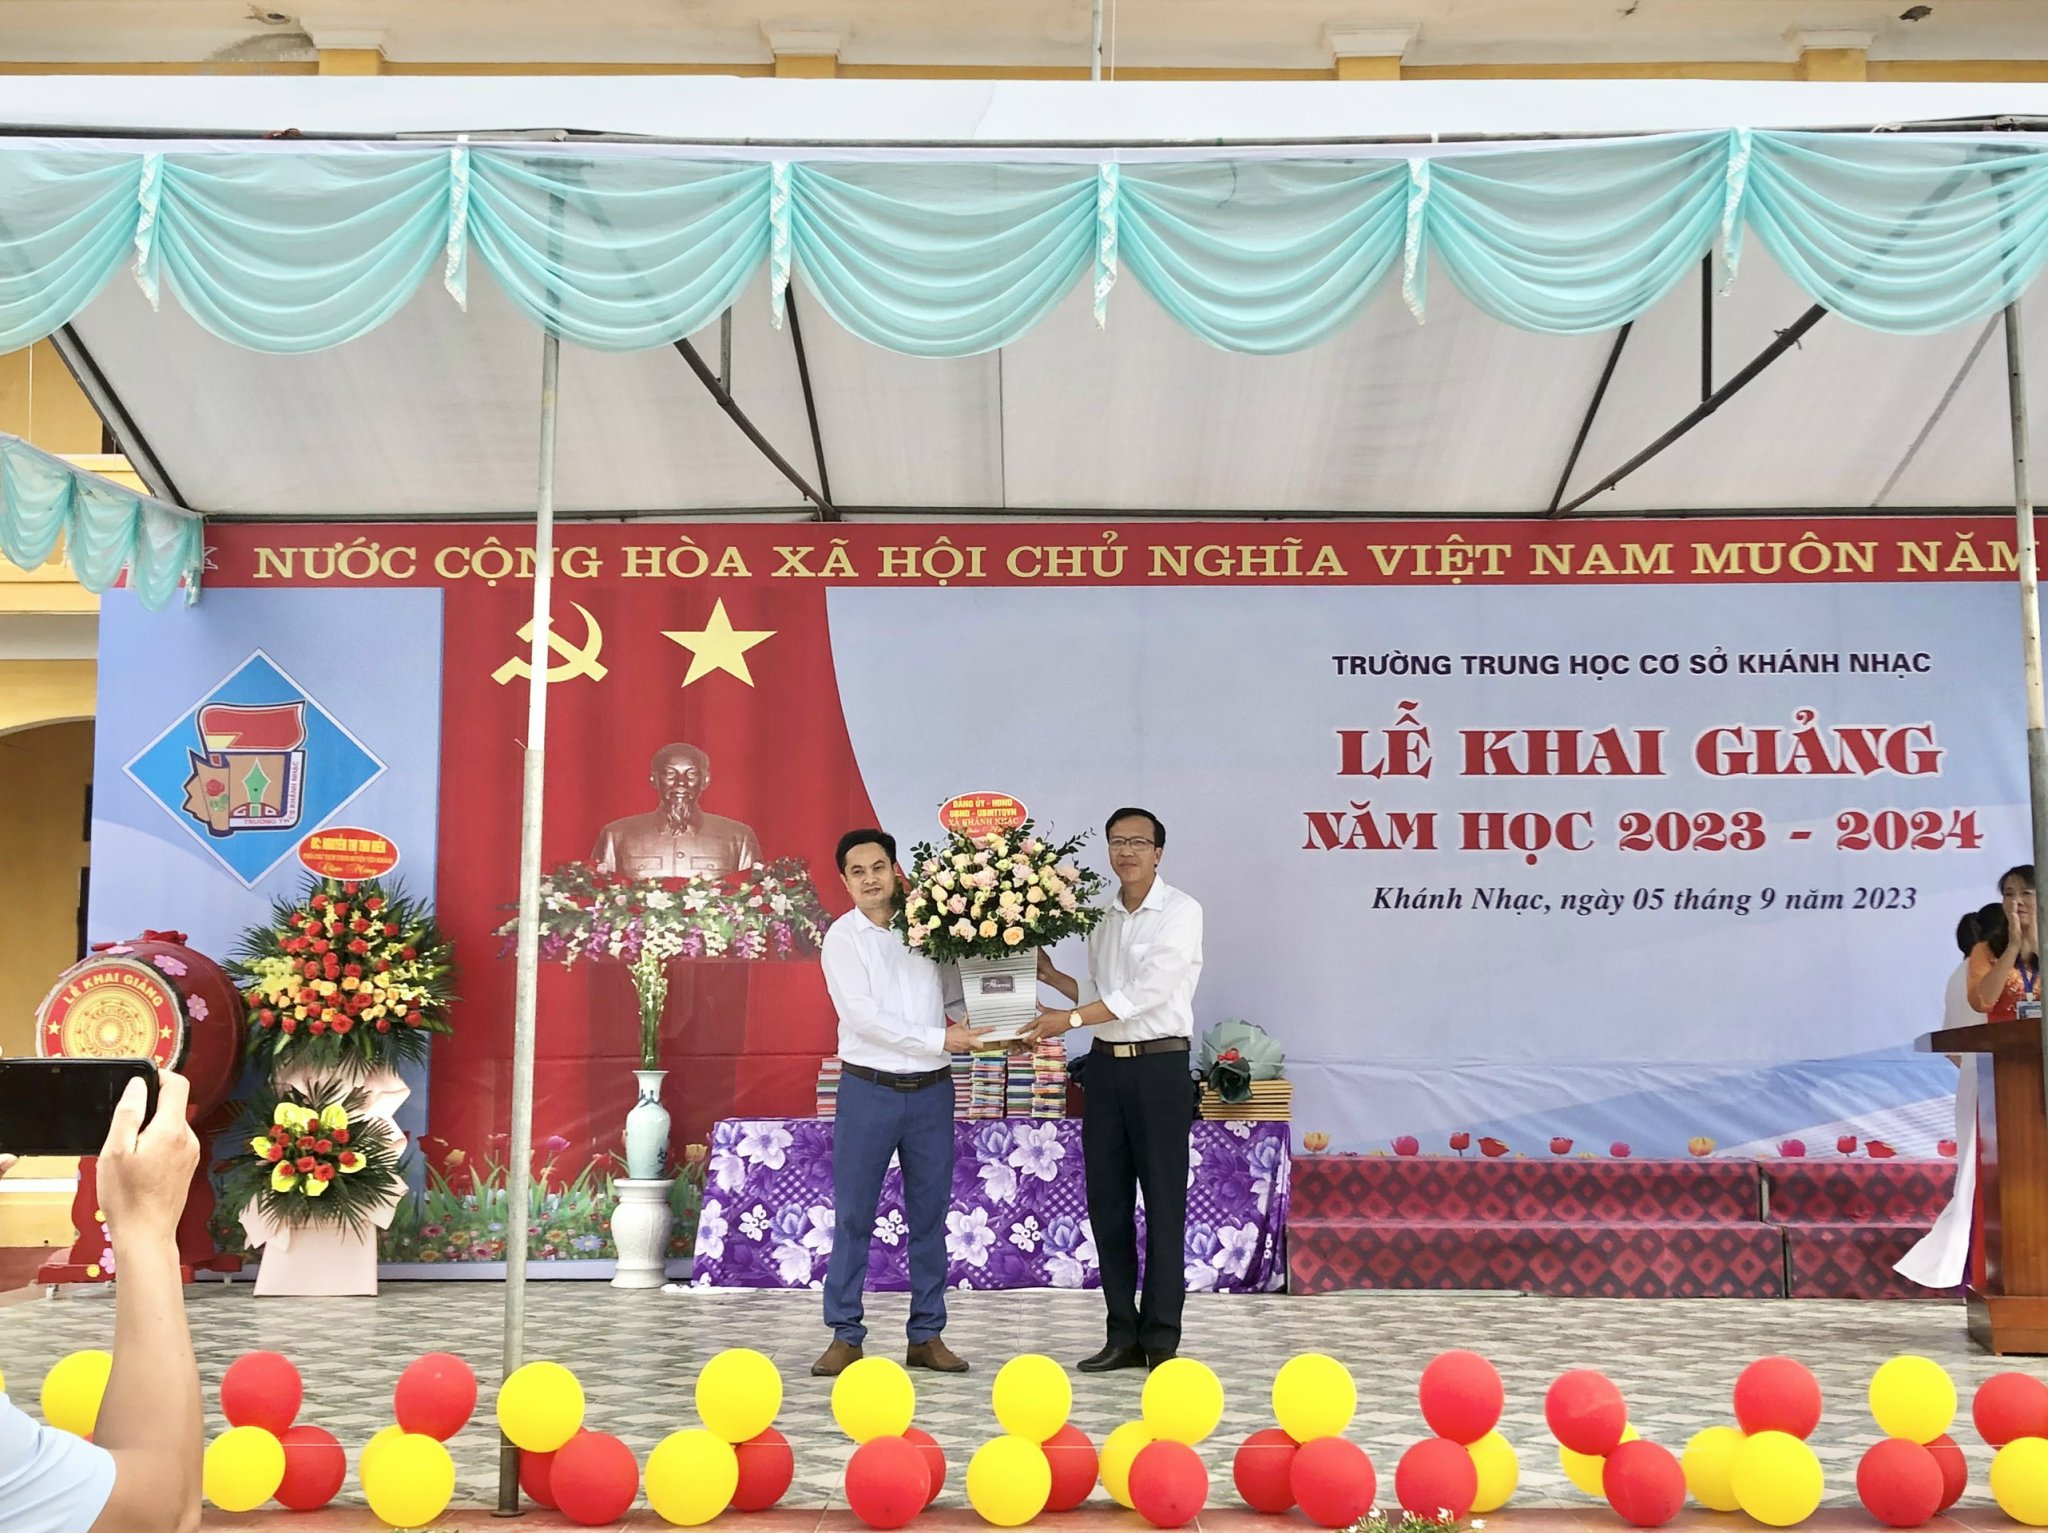 Trường Trung học cơ sở Khánh Nhạc long trọng tổ chức Lễ khai giảng năm học 2023- 2024